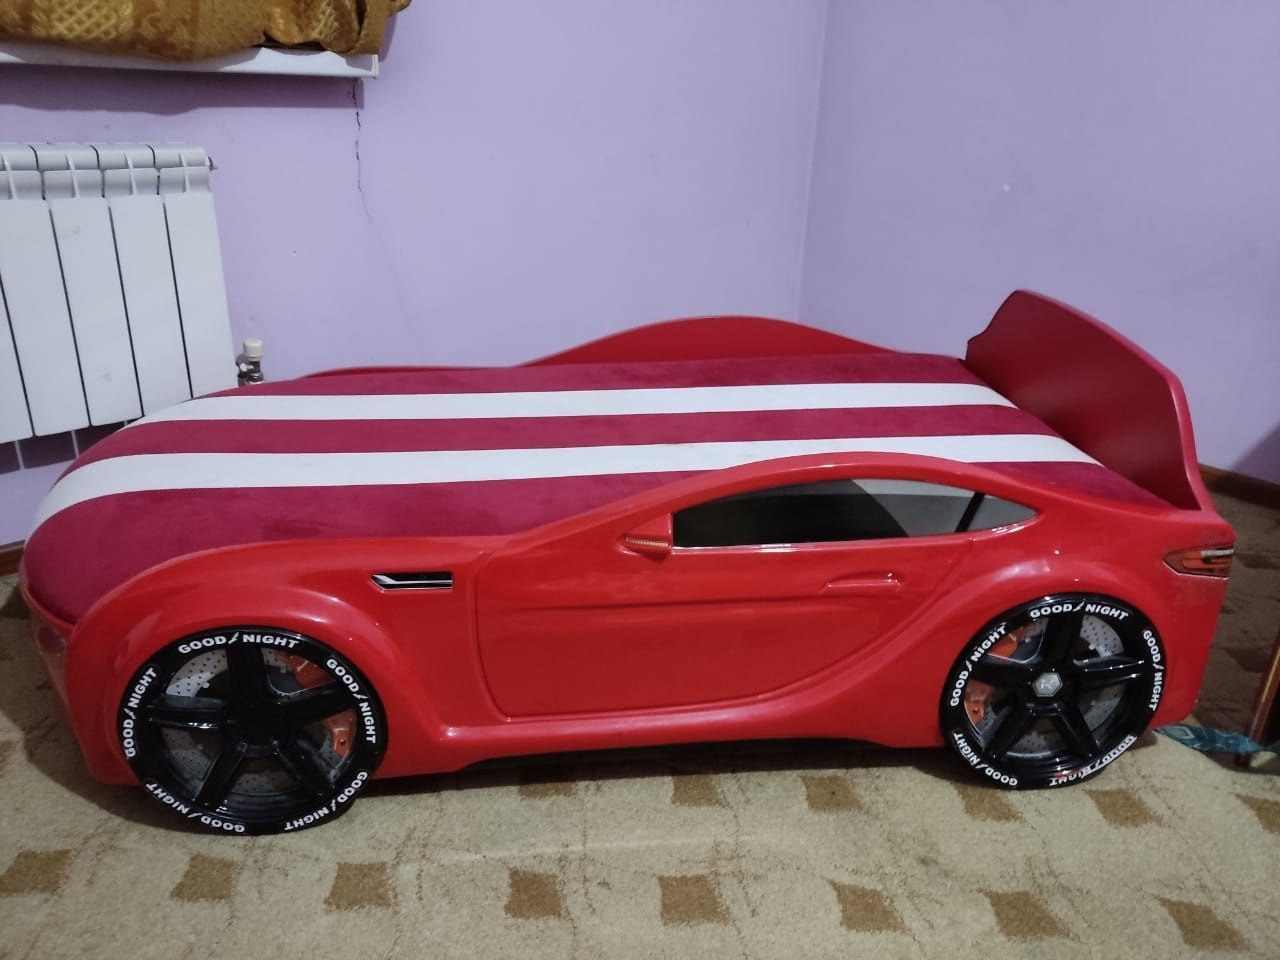 Детская кровать машина